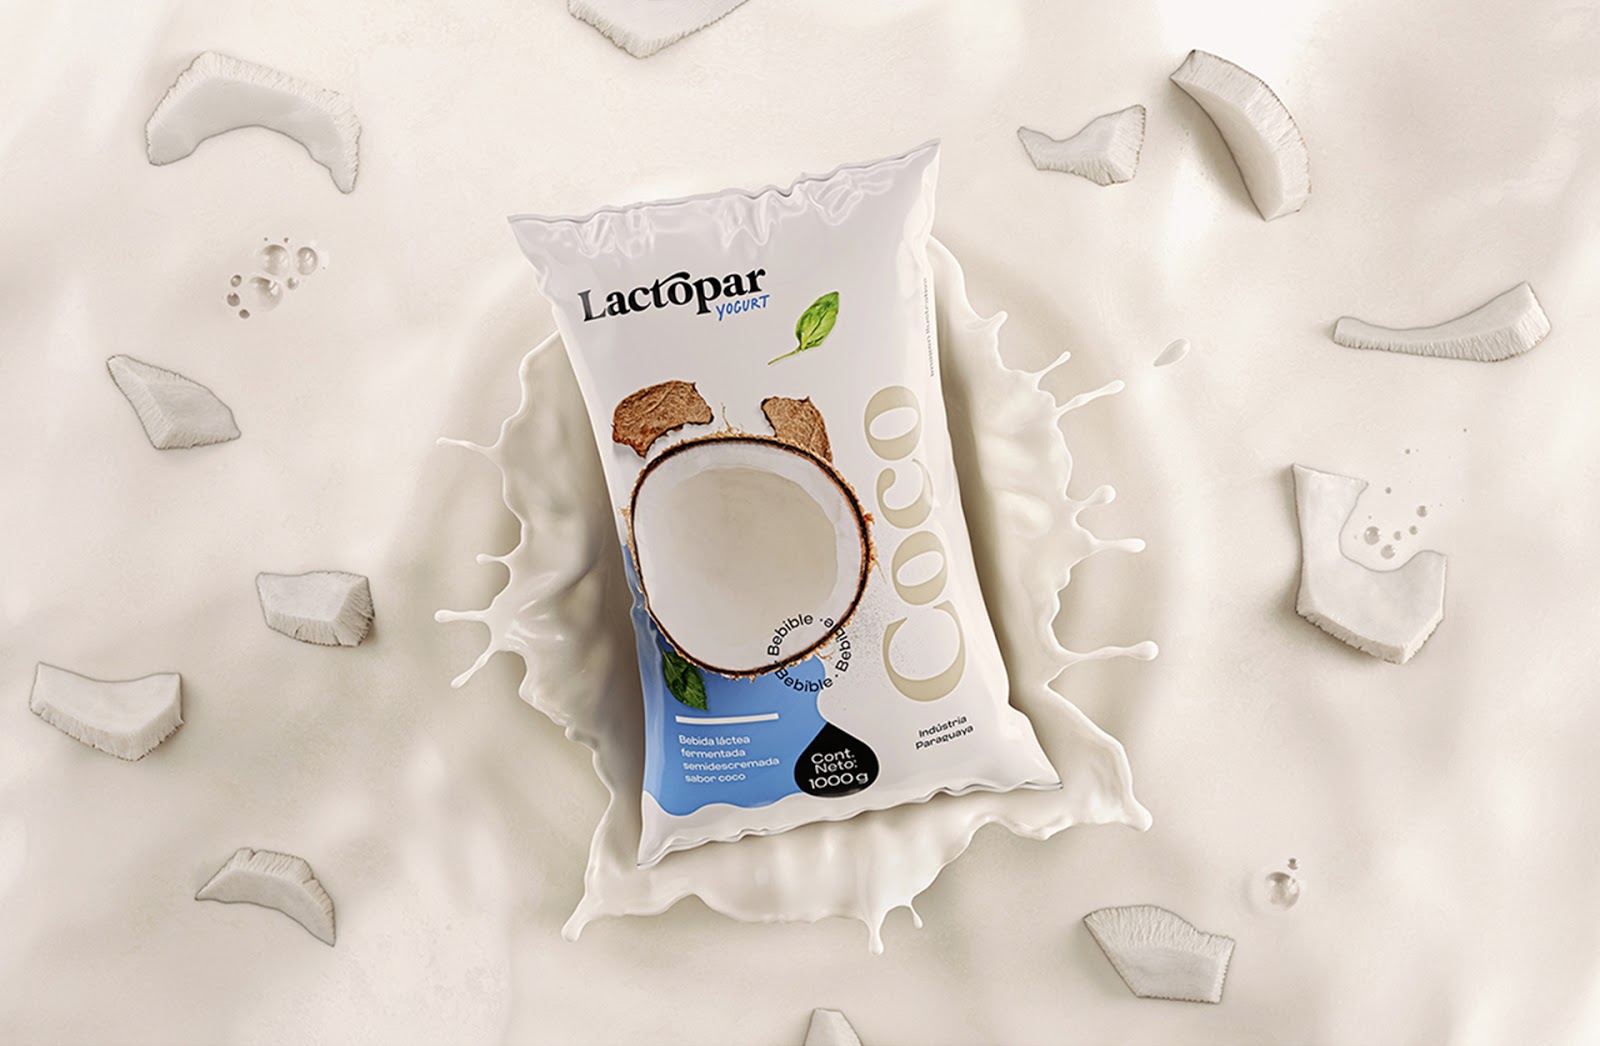 Lactopar酸奶包装设计 看了非常有食欲的酸奶产品包装设计作品